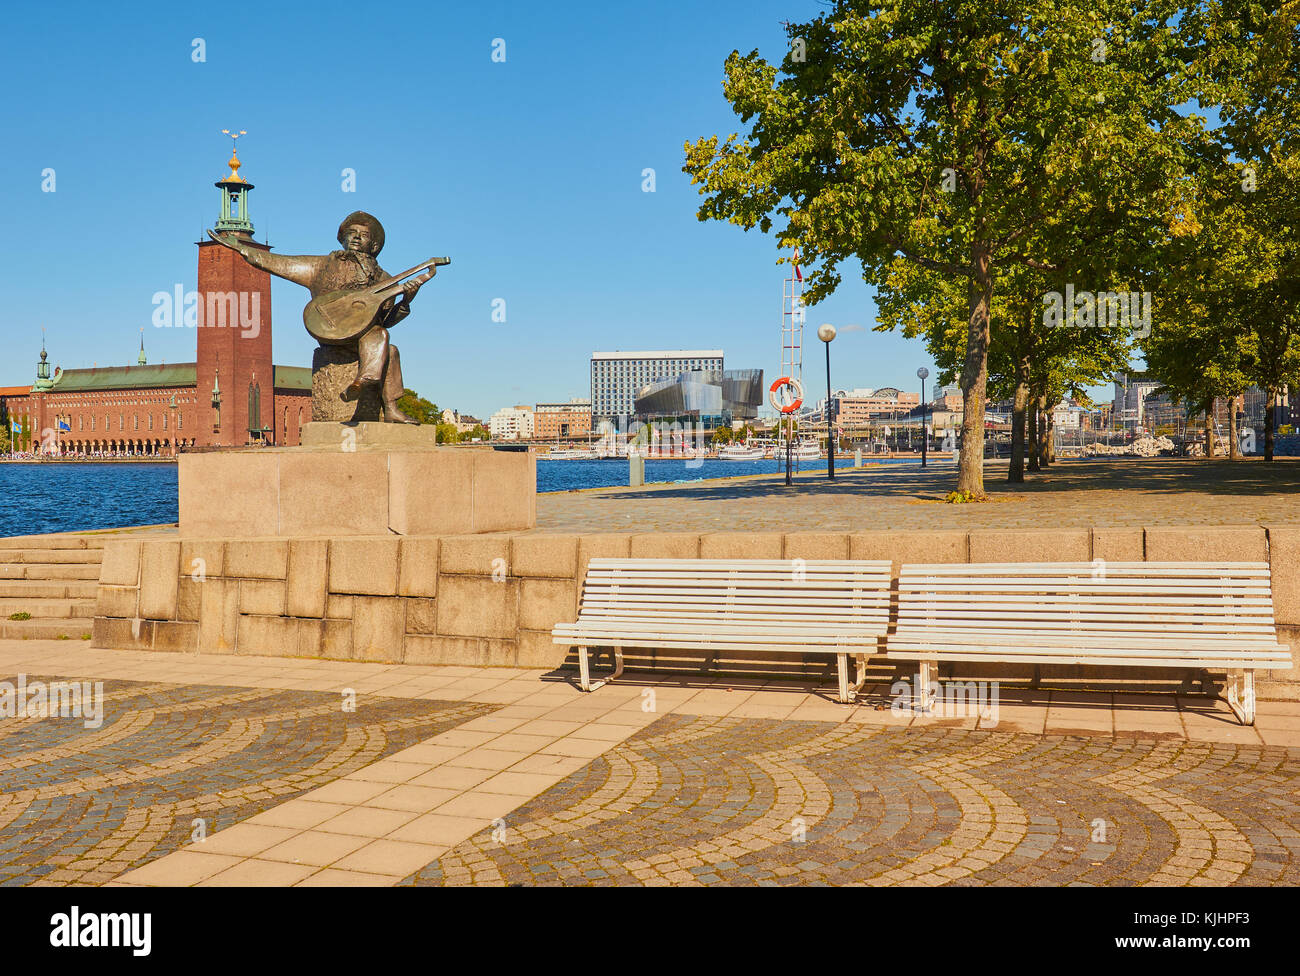 Statue von Evert Taube vor allem Troubadour der Schwedischen Ballade Tradition mit Stadshuset (Rathaus) im Hintergrund, Riddarholmen, Stockholm, Schweden Stockfoto